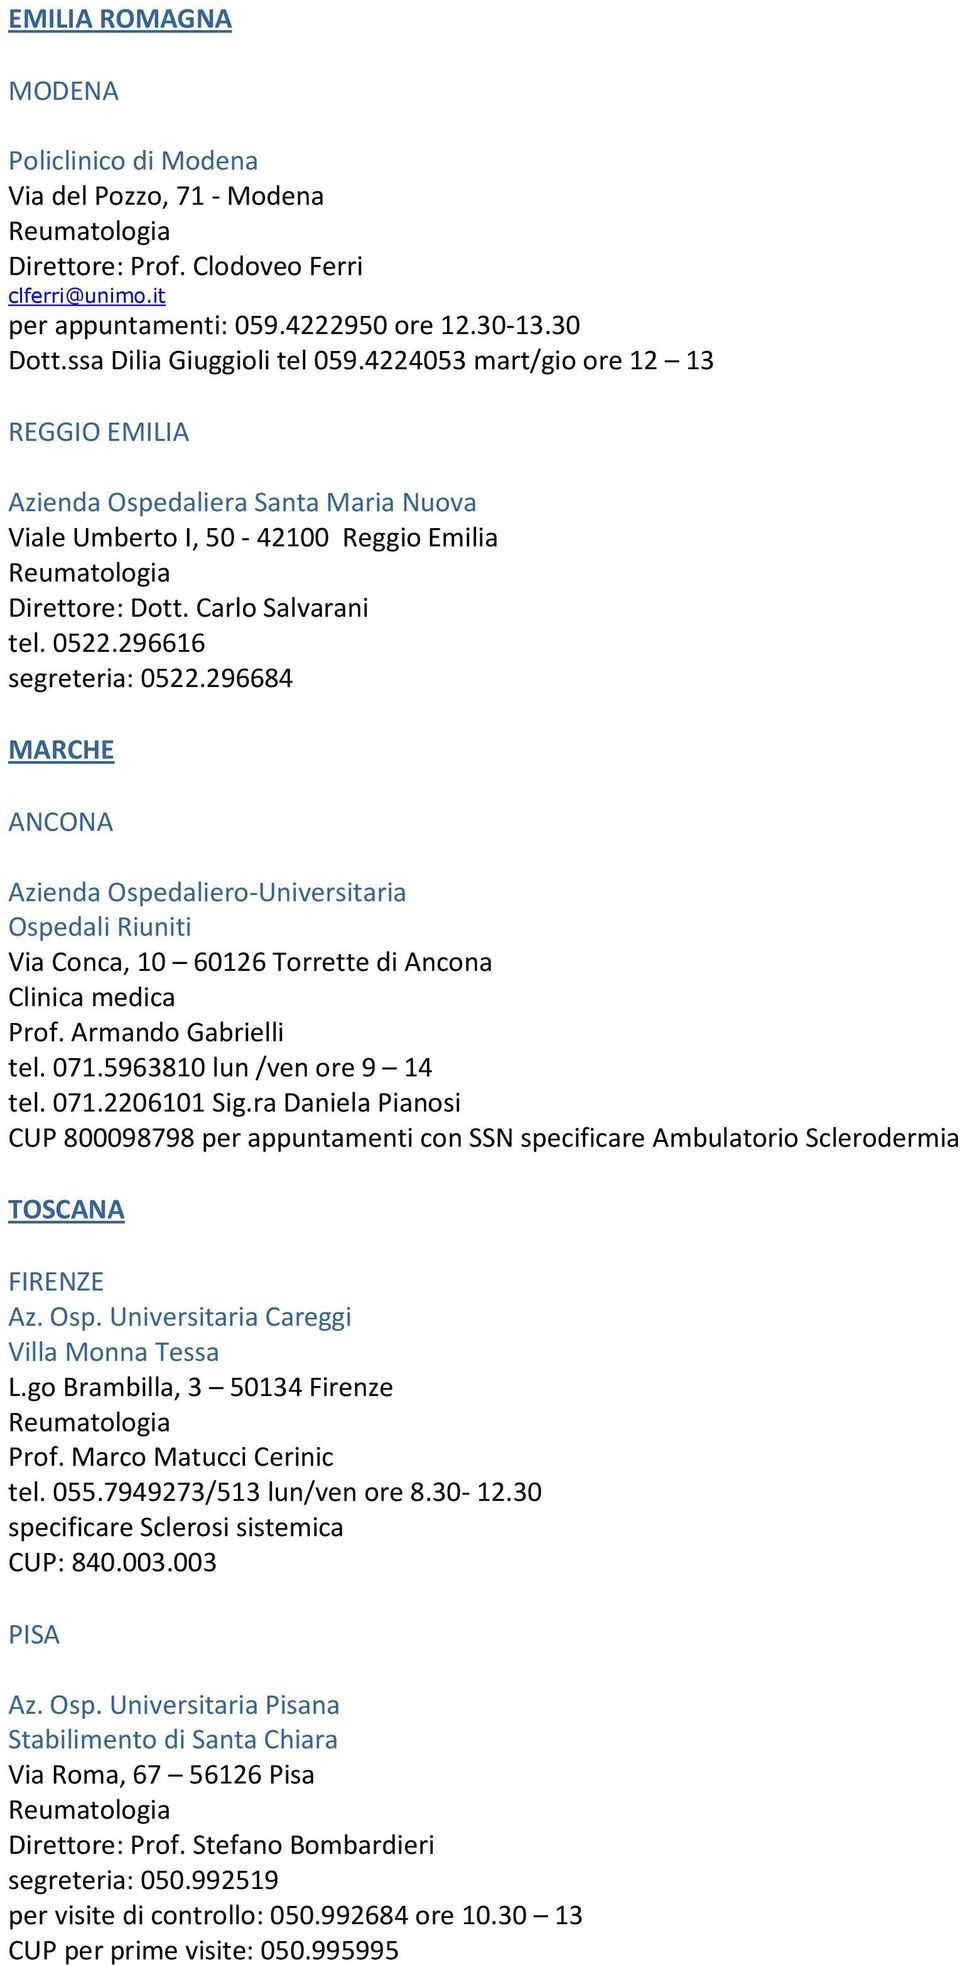 296684 MARCHE ANCONA Azienda Ospedaliero-Universitaria Ospedali Riuniti Via Conca, 10 60126 Torrette di Ancona Clinica medica Prof. Armando Gabrielli tel. 071.5963810 lun /ven ore 9 14 tel. 071.2206101 Sig.